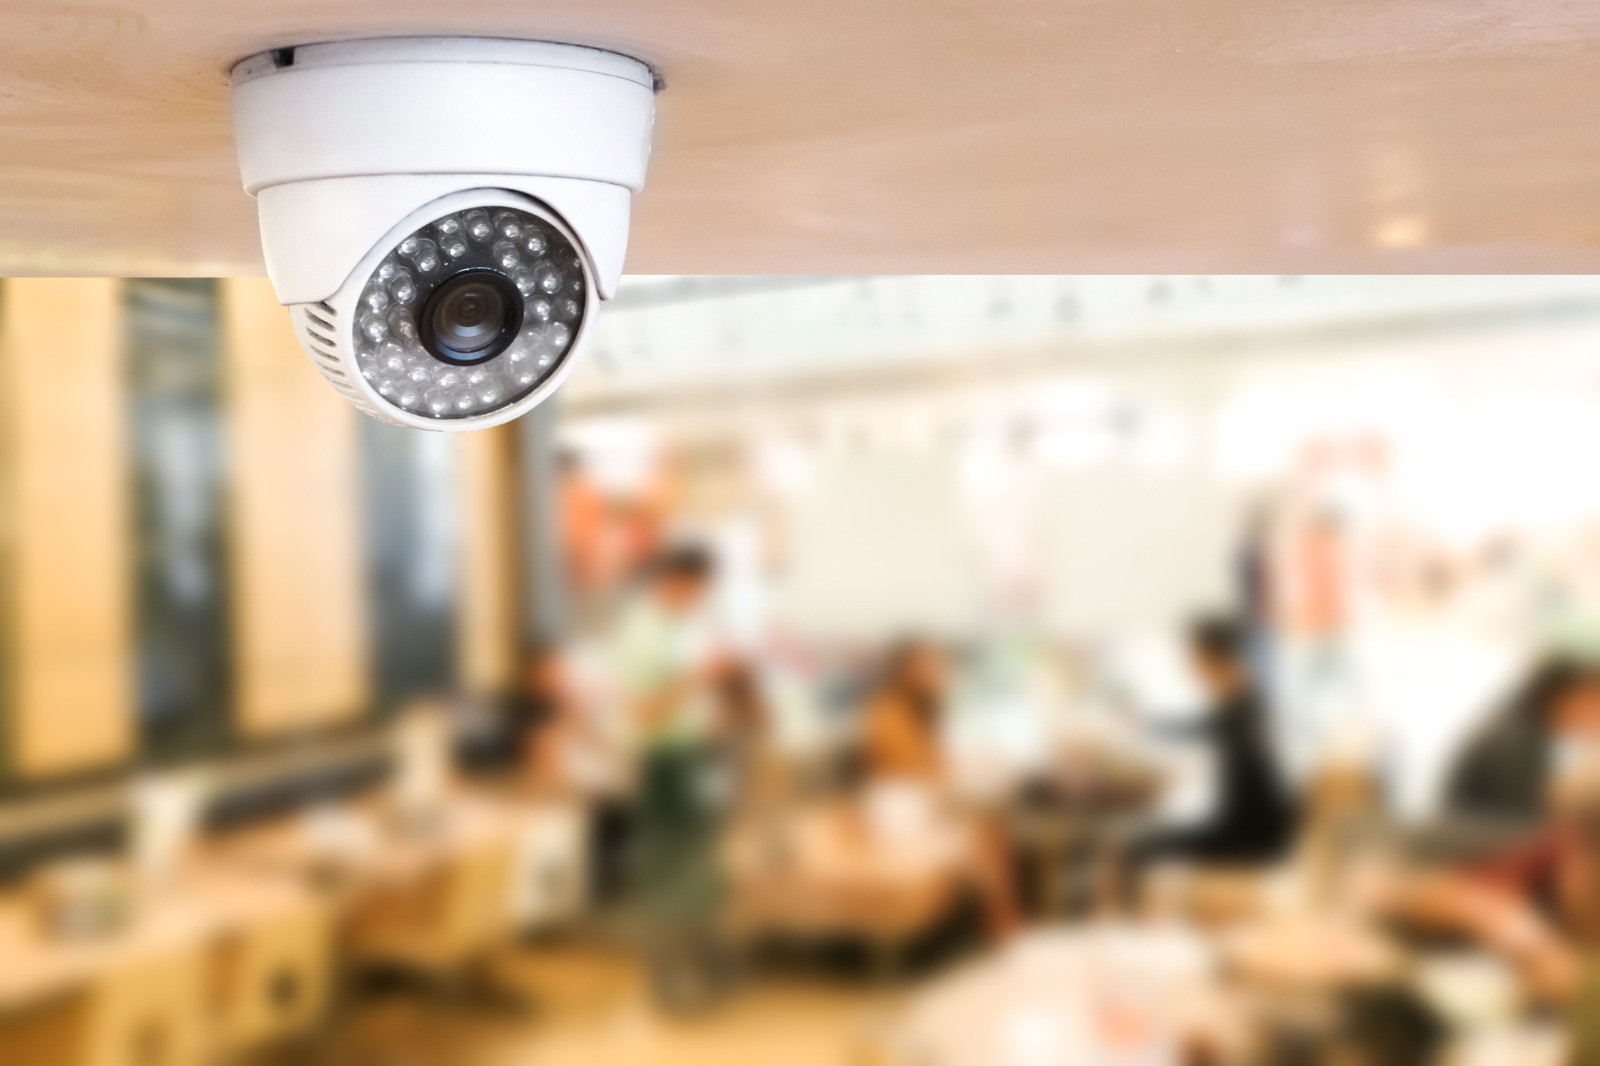 Security Cameras in Restaurants